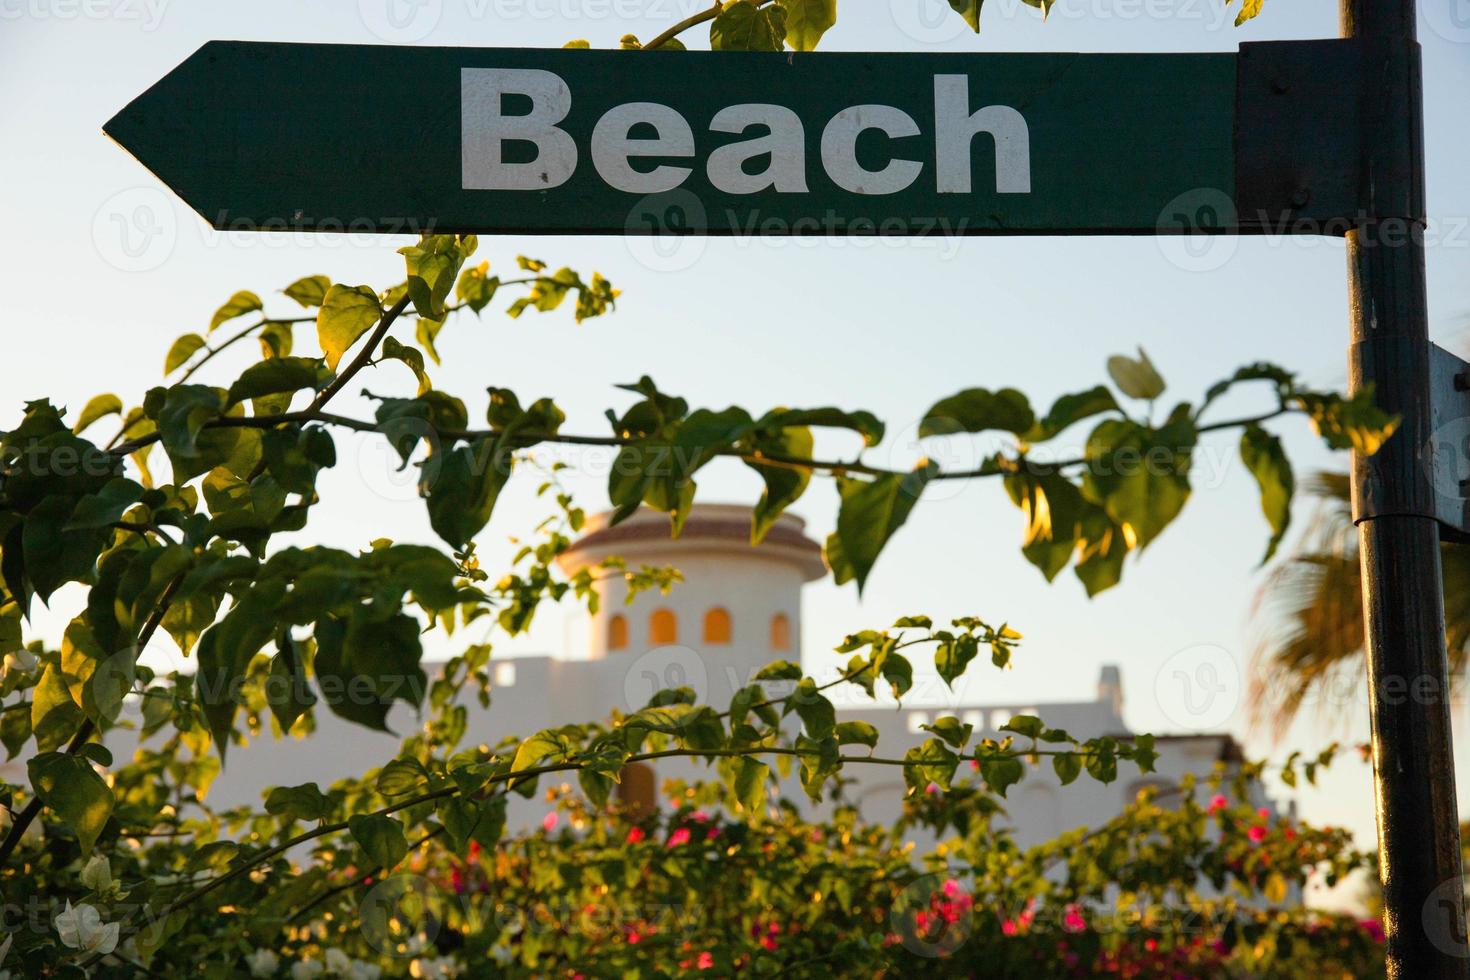 la placa de playa indica la dirección a la izquierda. foto